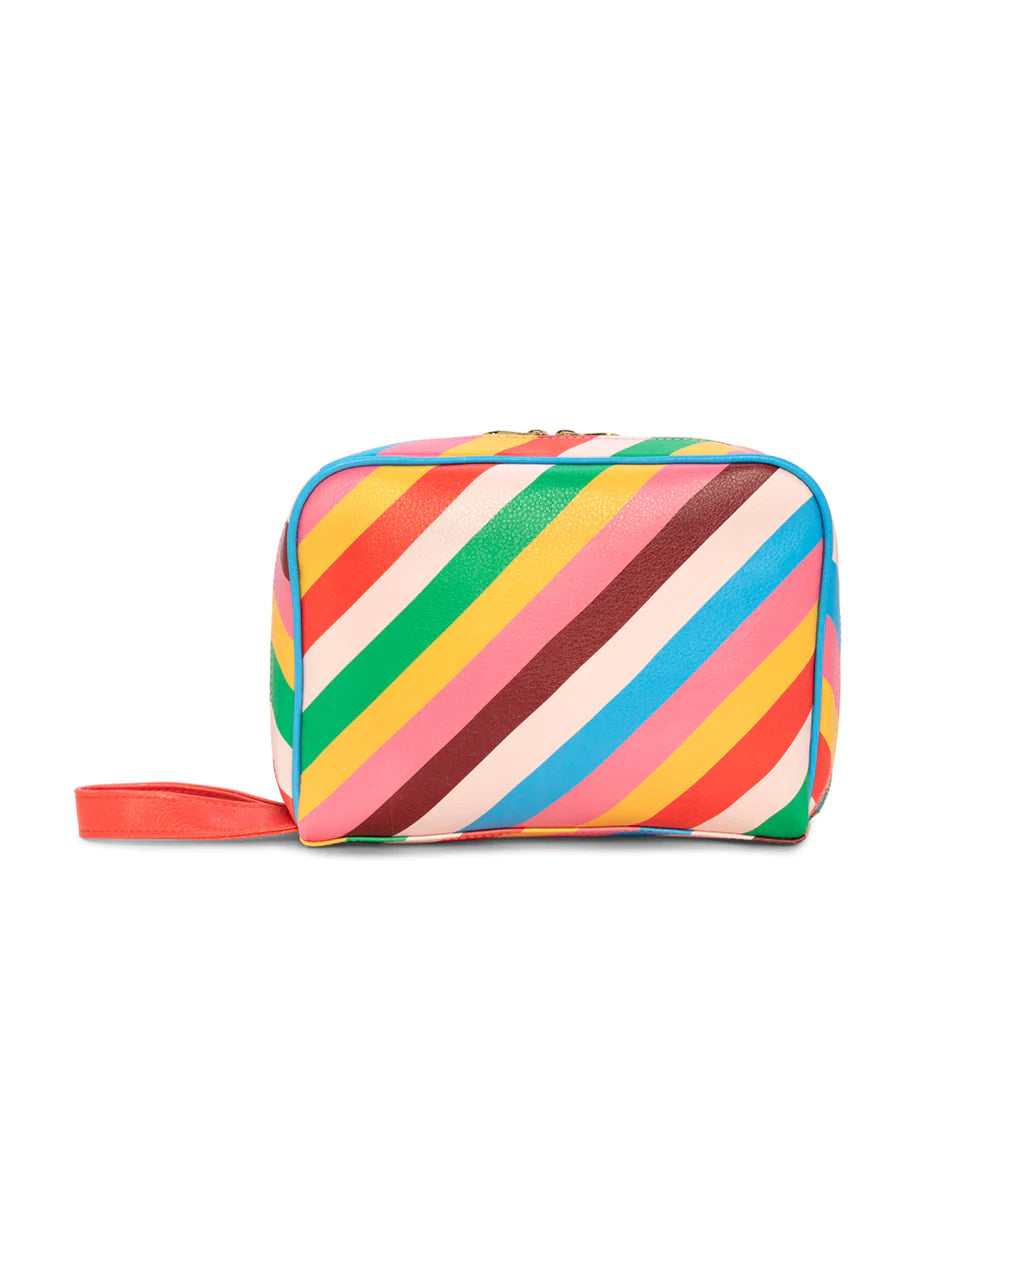 Getaway Toiletry Bag-Rainbow Stripe